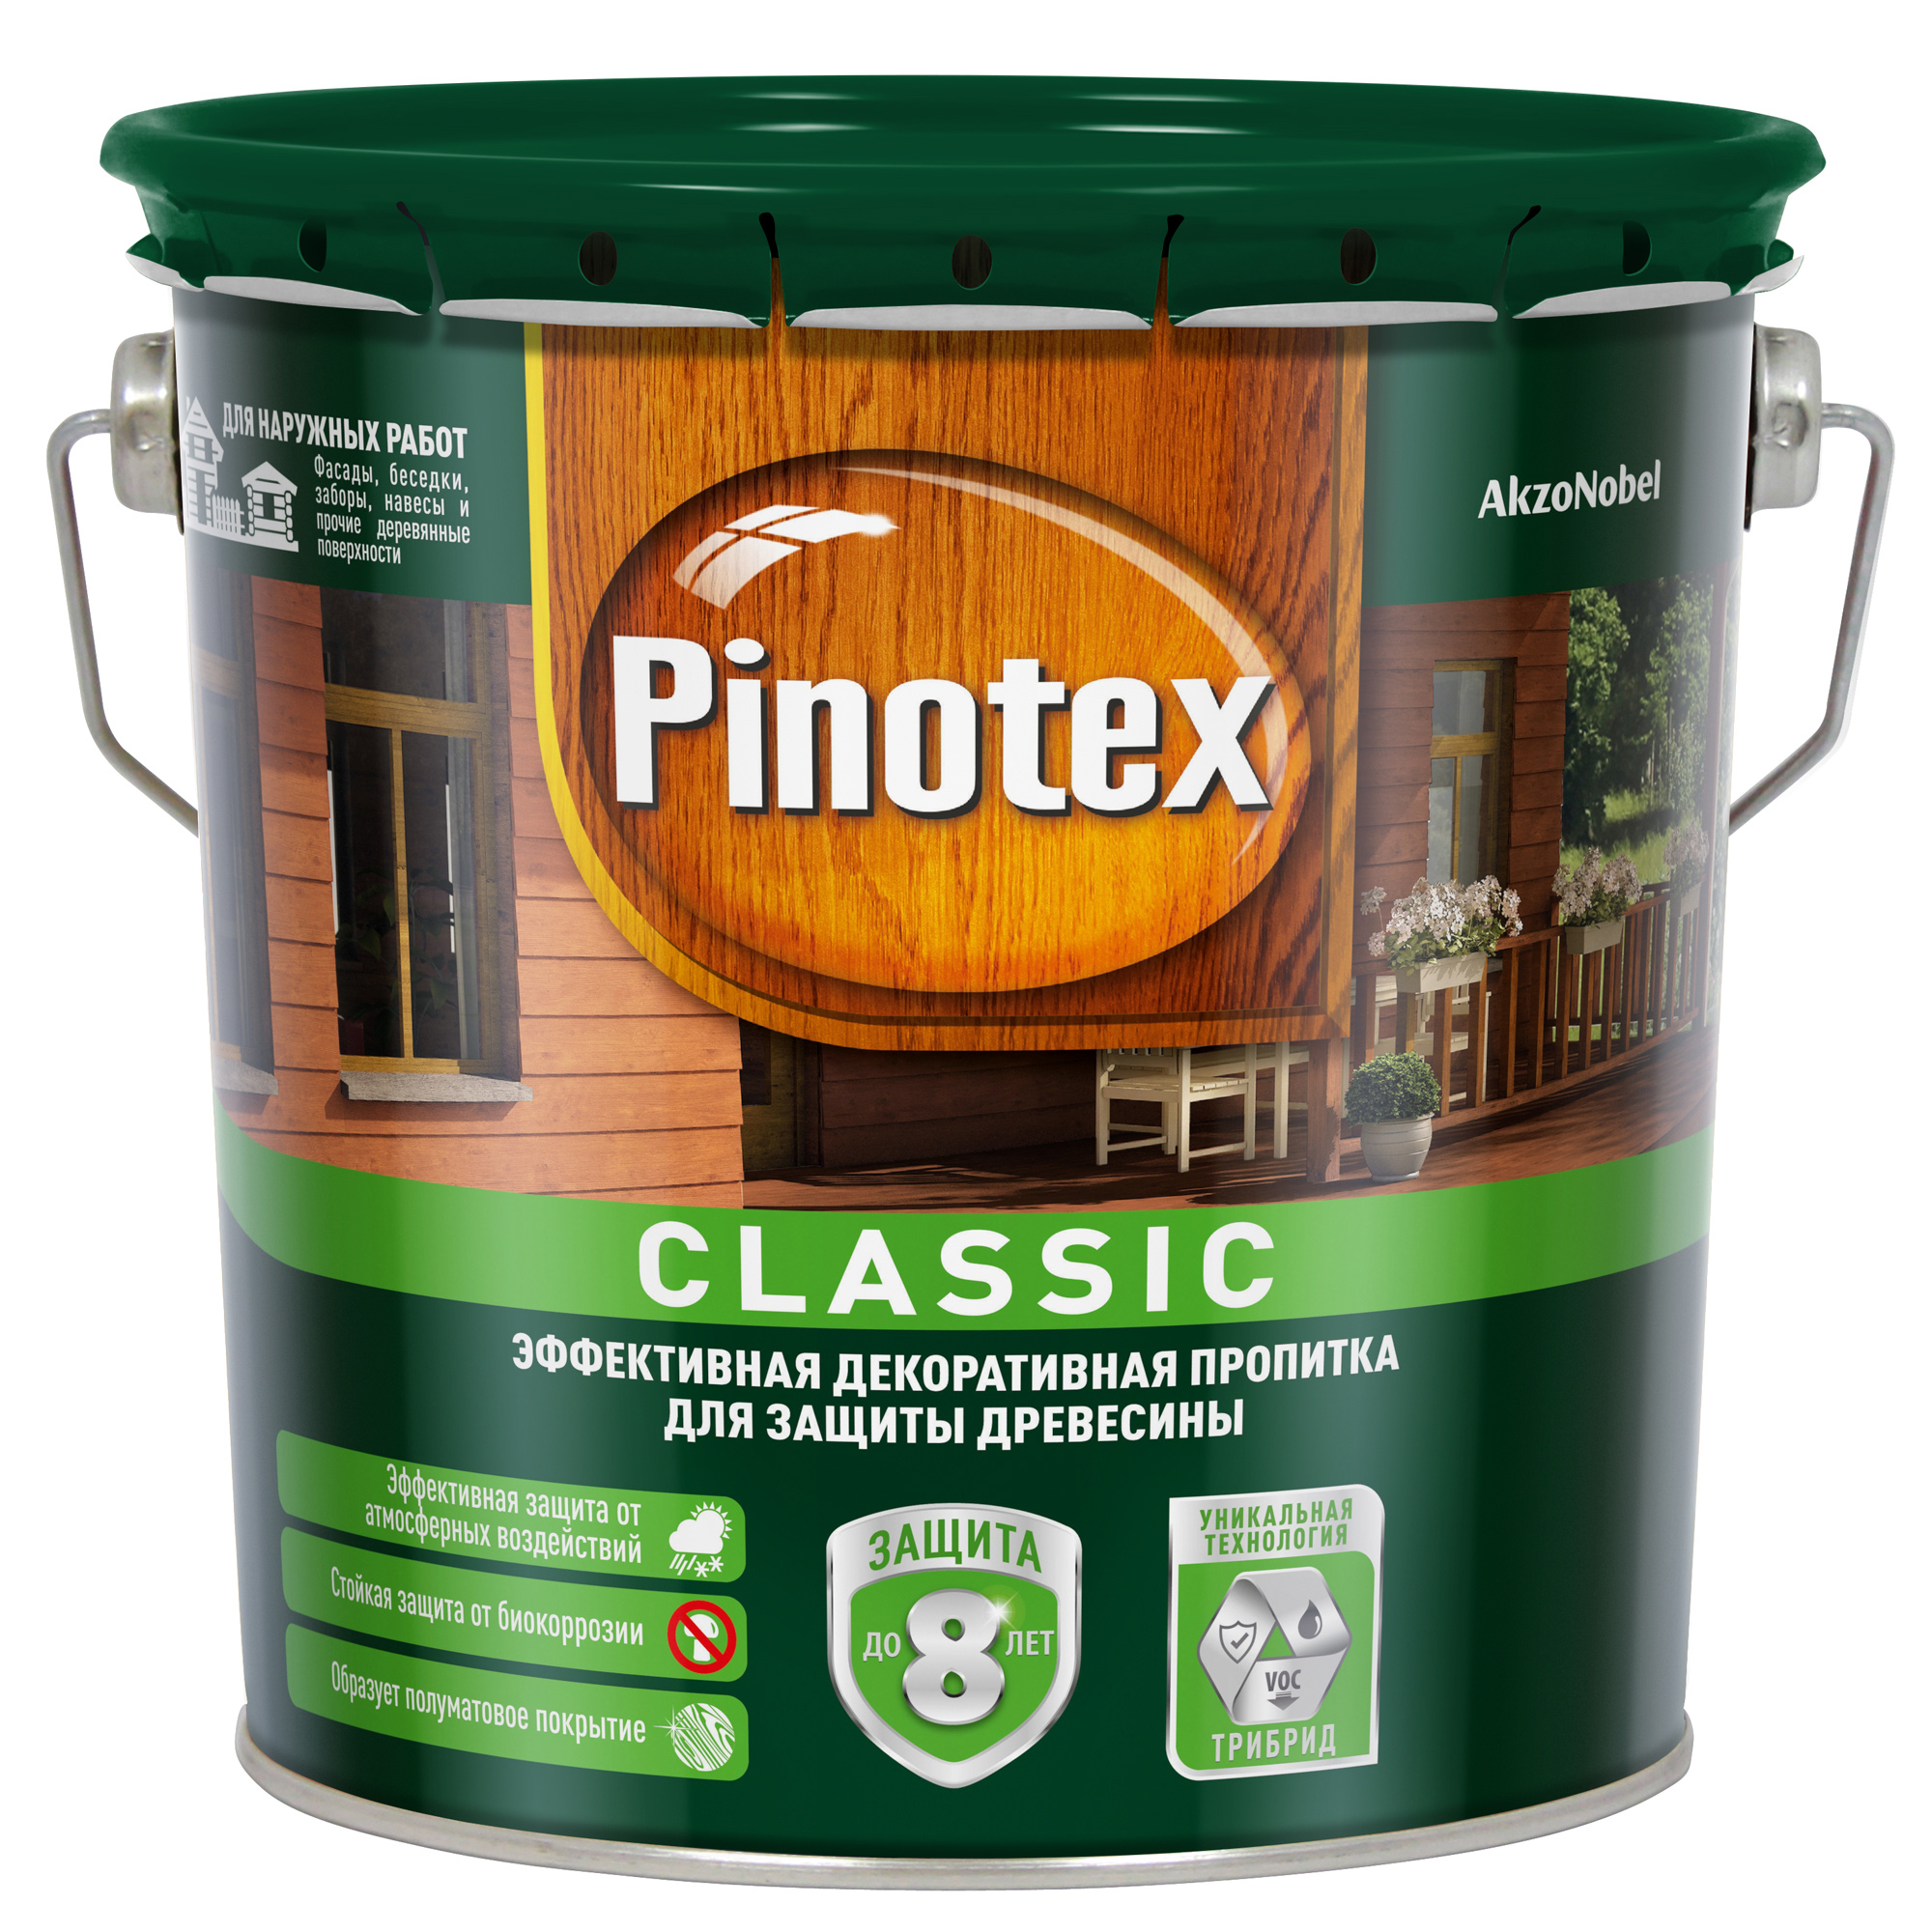 Пропитка Pinotex classic 2.7л палисандр